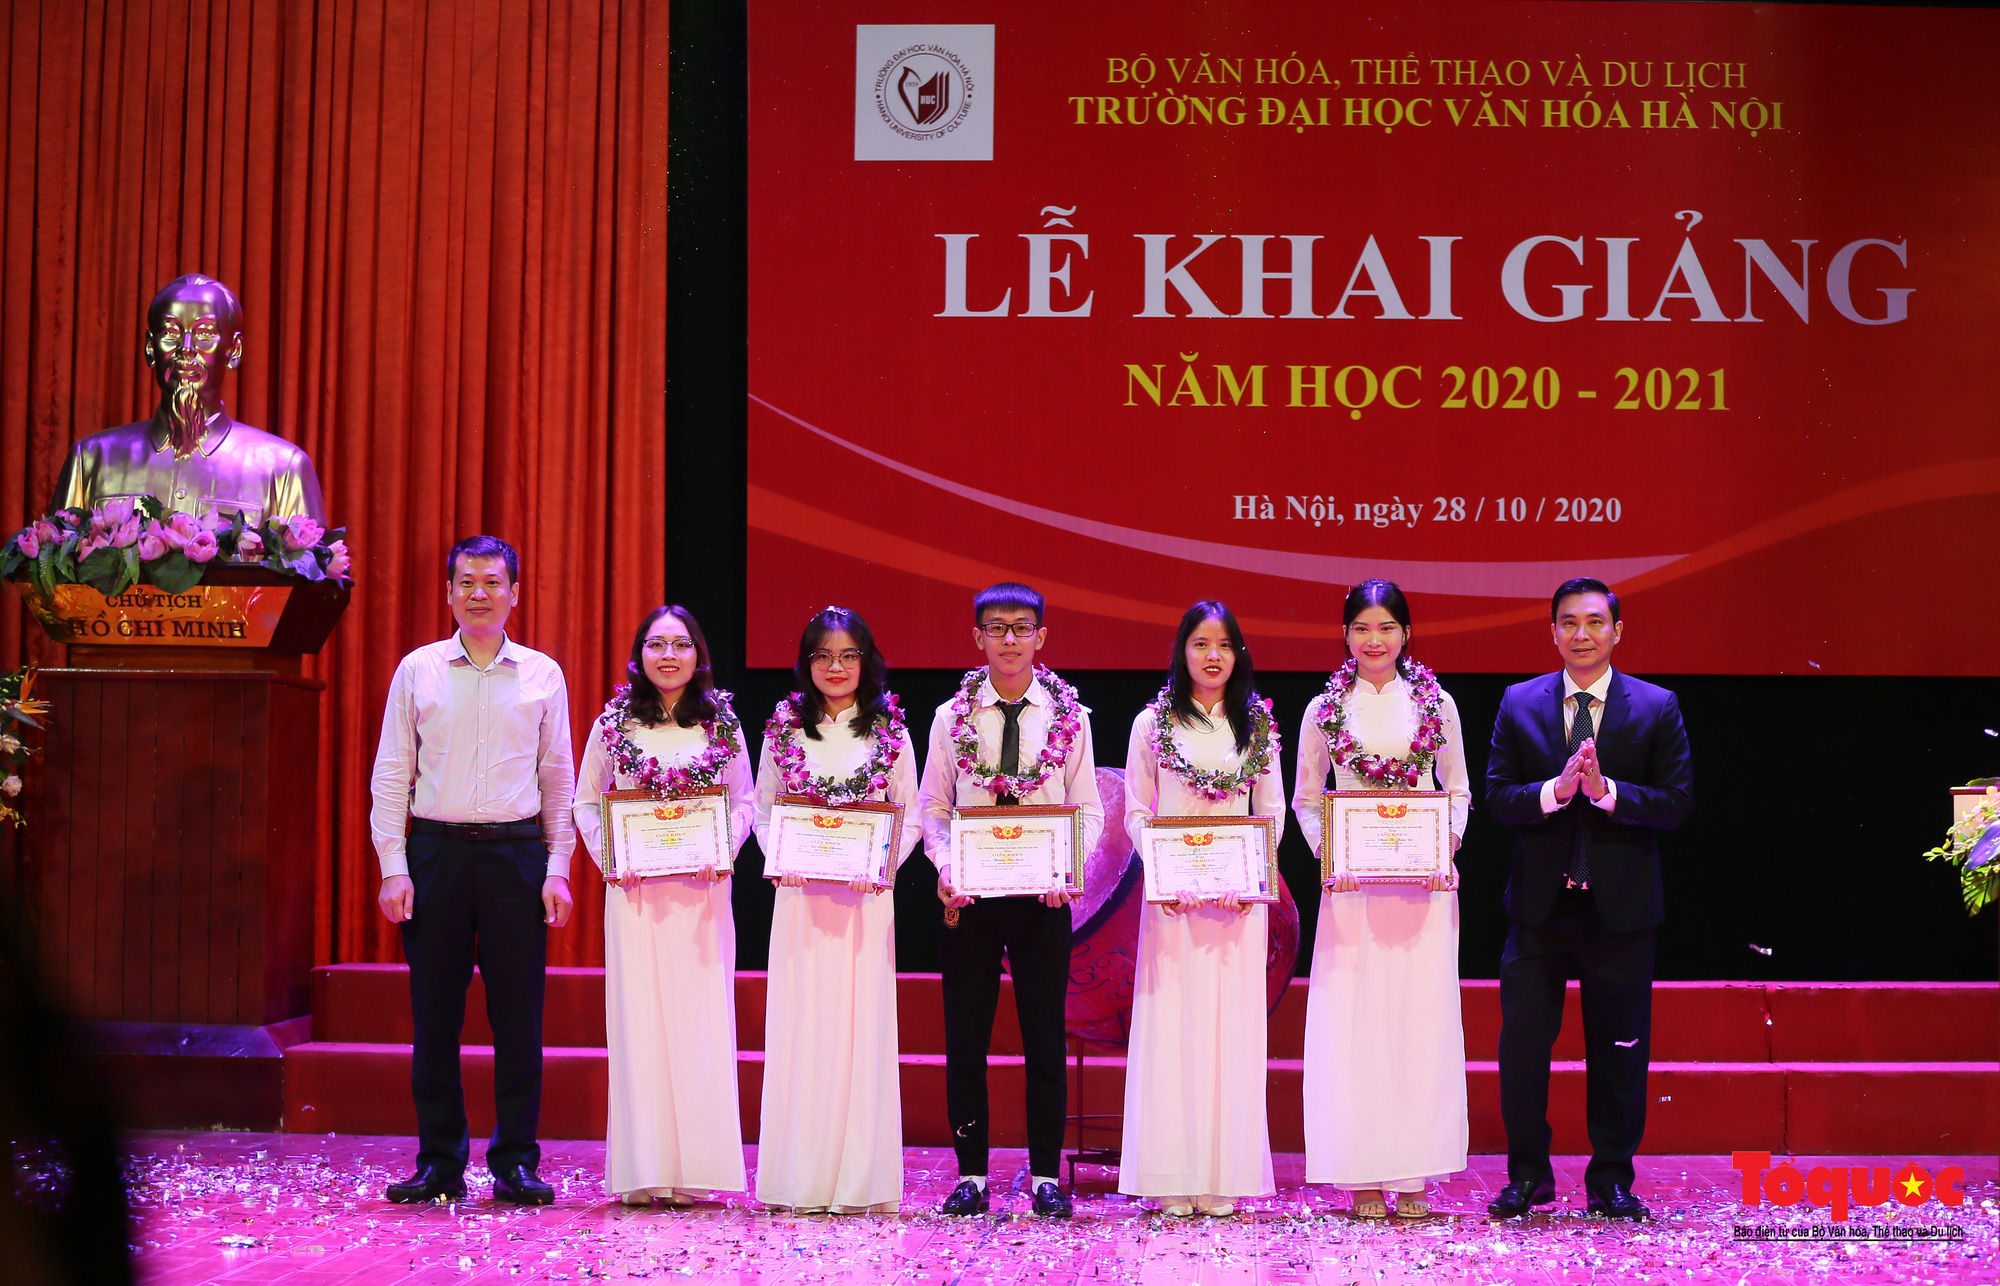 Đại học Văn hóa Hà Nội tiếp tục khẳng định là nơi đào tạo cán bộ văn hoá lớn nhất cả nước - Ảnh 9.